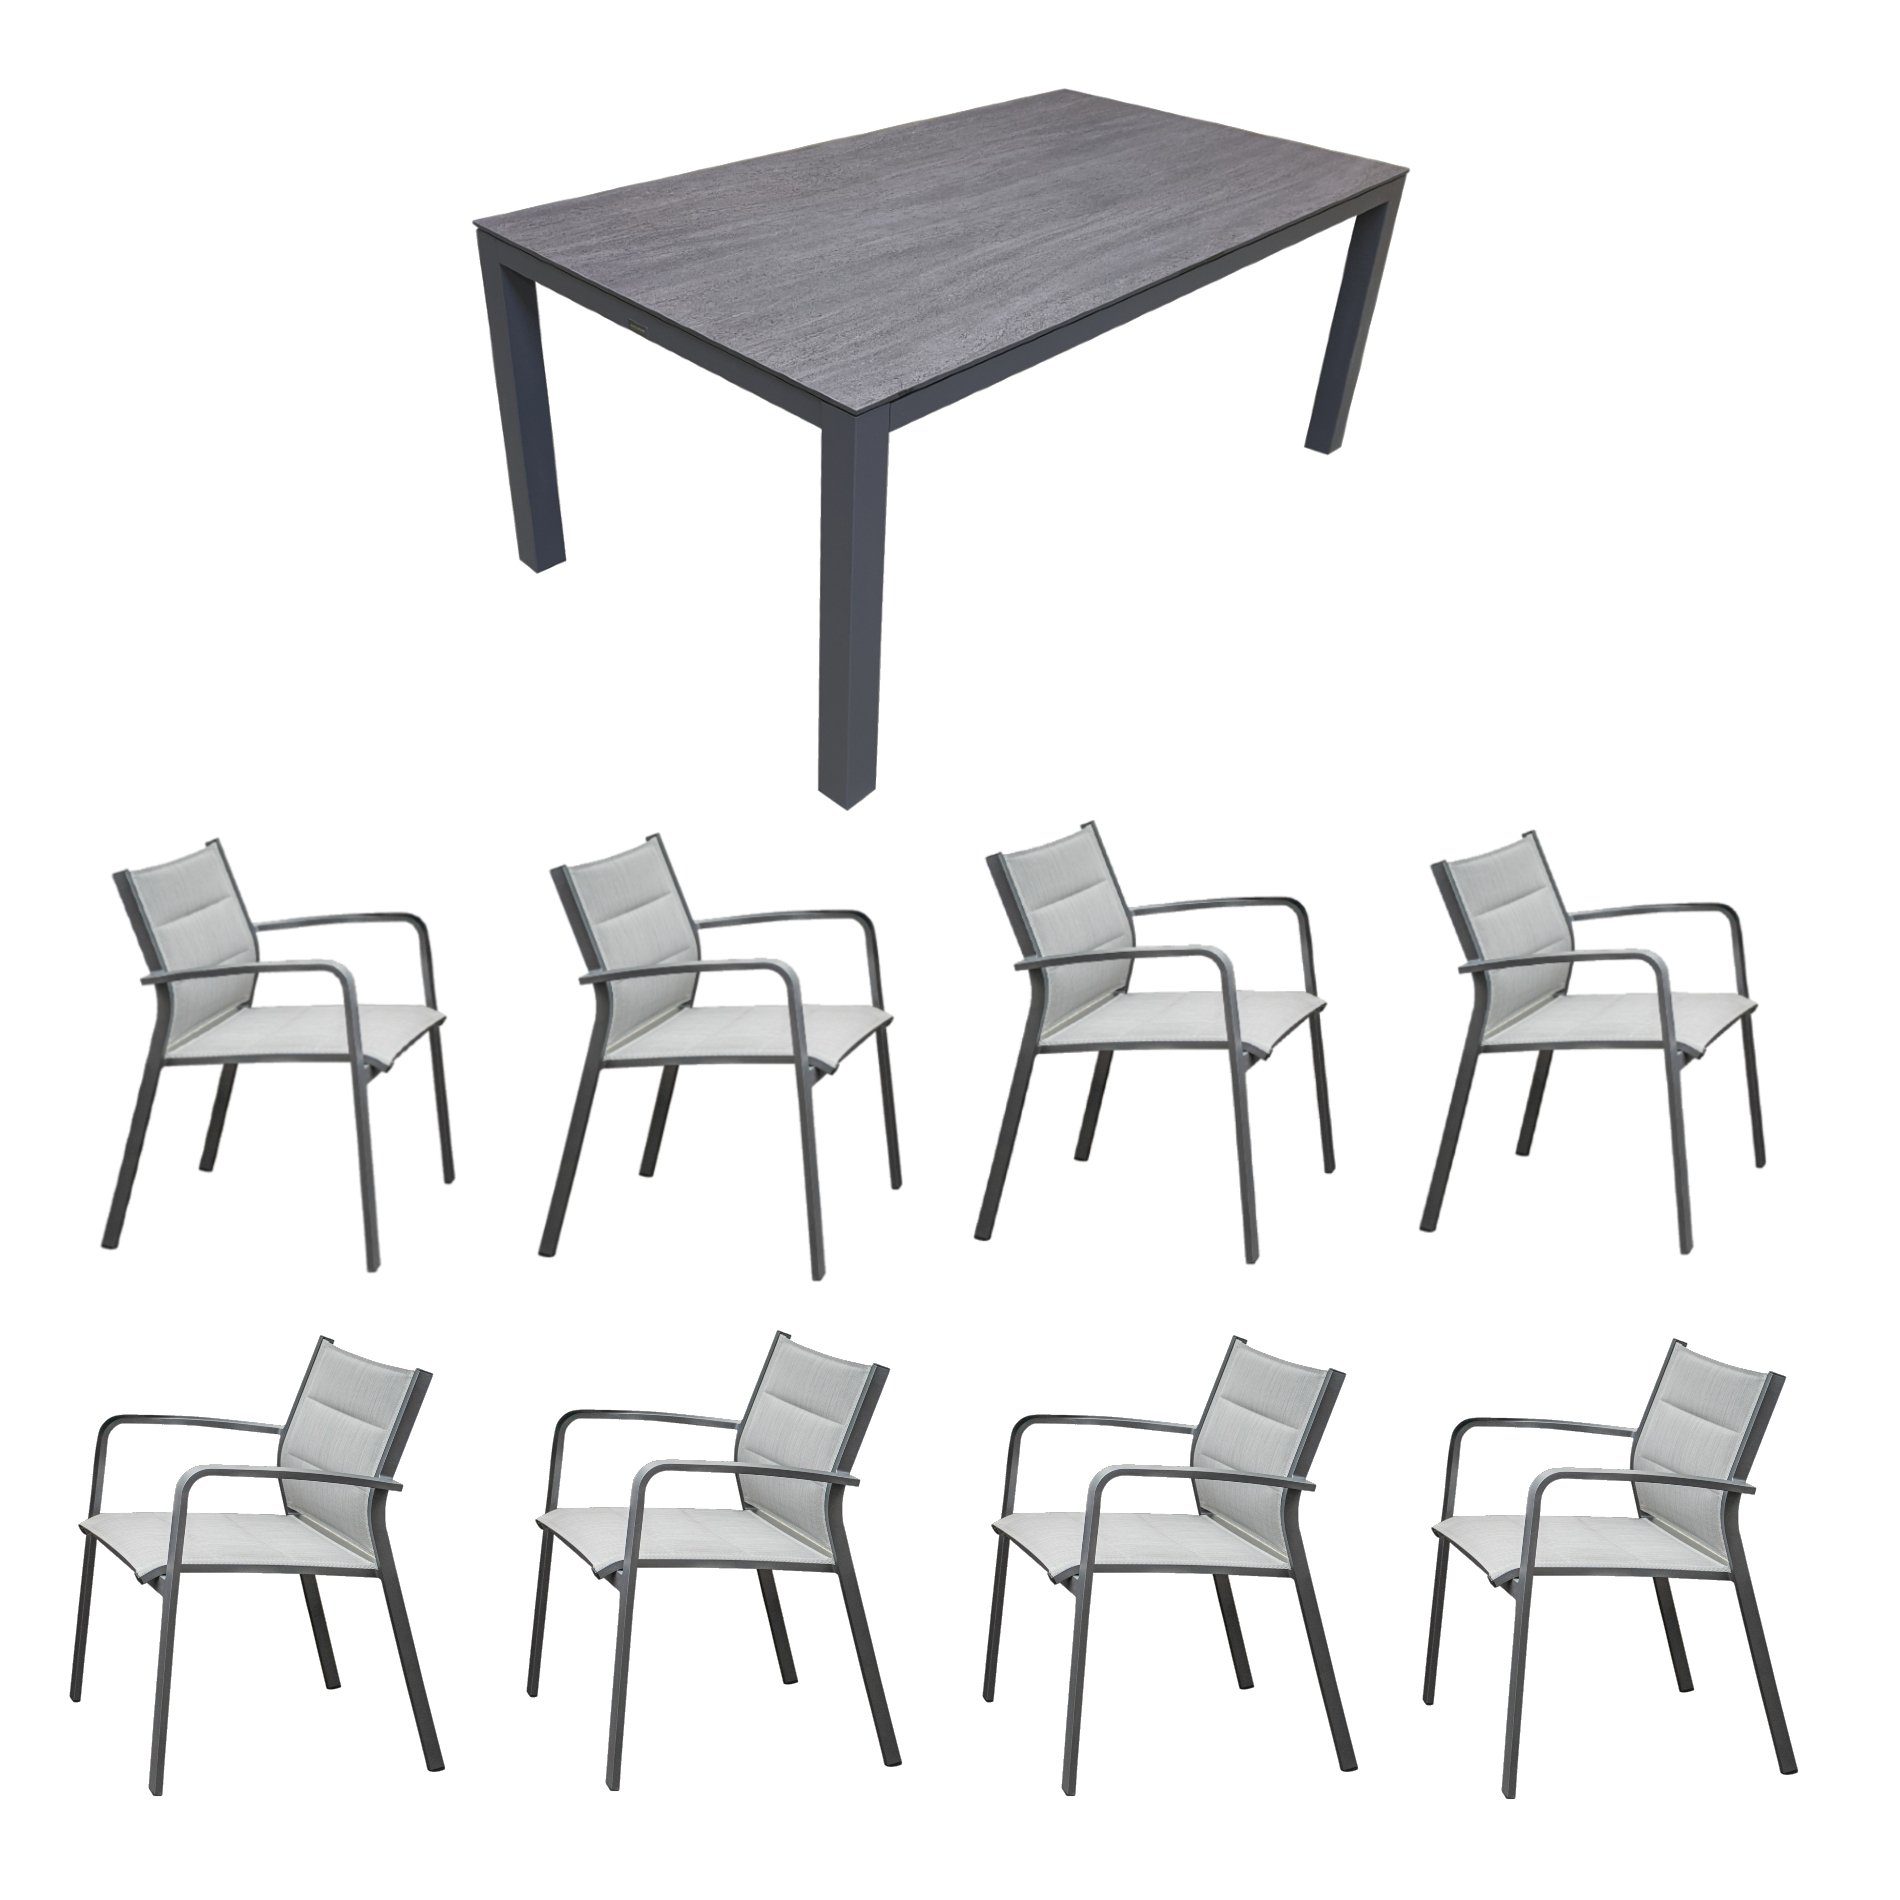 Home Islands Gartenmöbel-Set mit Tisch "Dayann" und Stapelsessel "Luis", Gestell Alu charcoal (anthrazit), Sitz gepolstert silver black, Tischplatte HPL dark grey